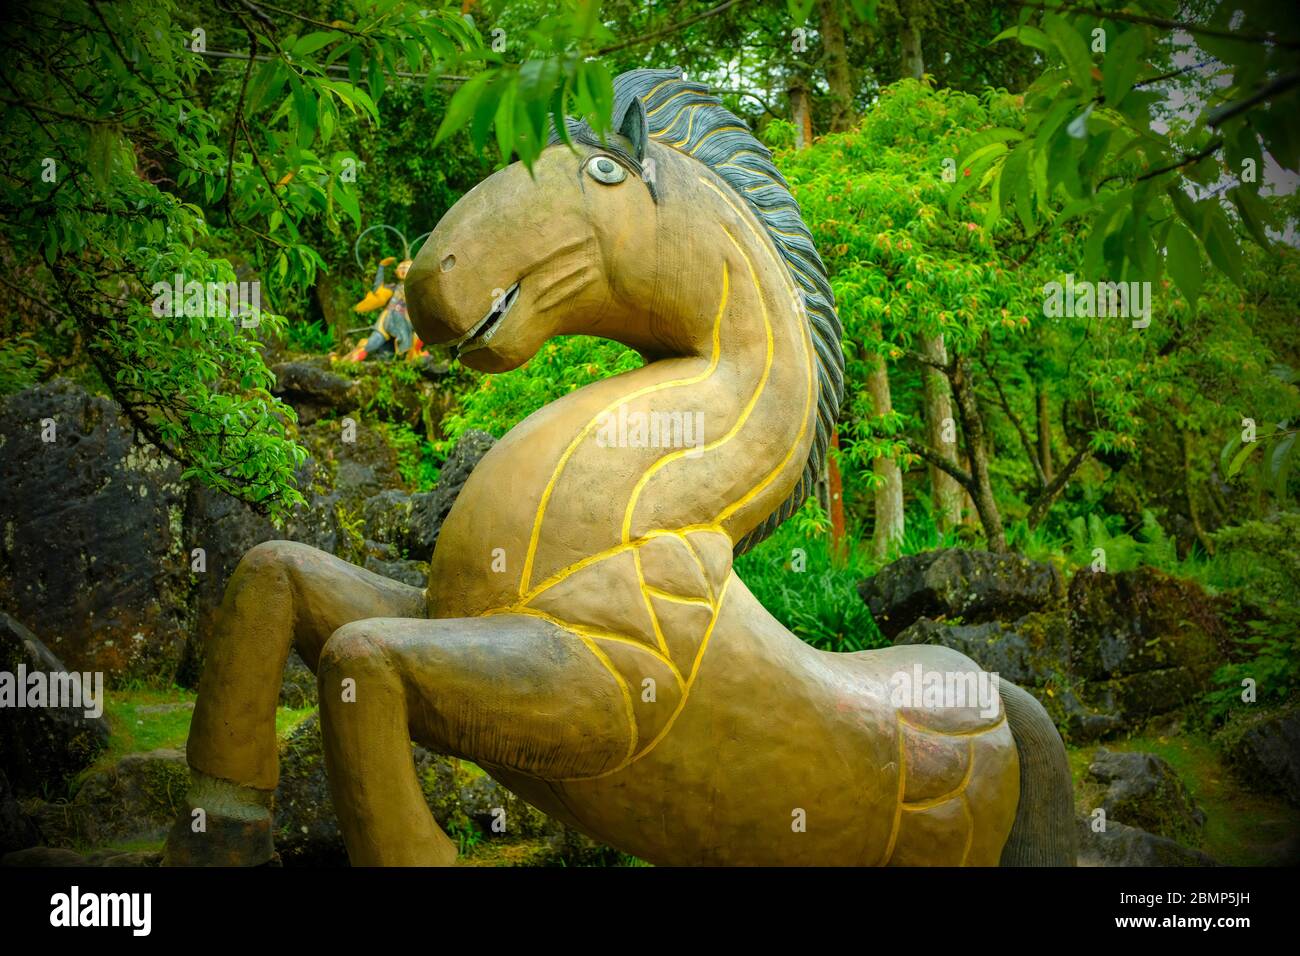 Sa pa, Vietnam - 26 avril 2018 : sculpture en bois peint d'art naïf d'un cheval, prise sur une journée de fonte avec des arbres en arrière-plan Banque D'Images